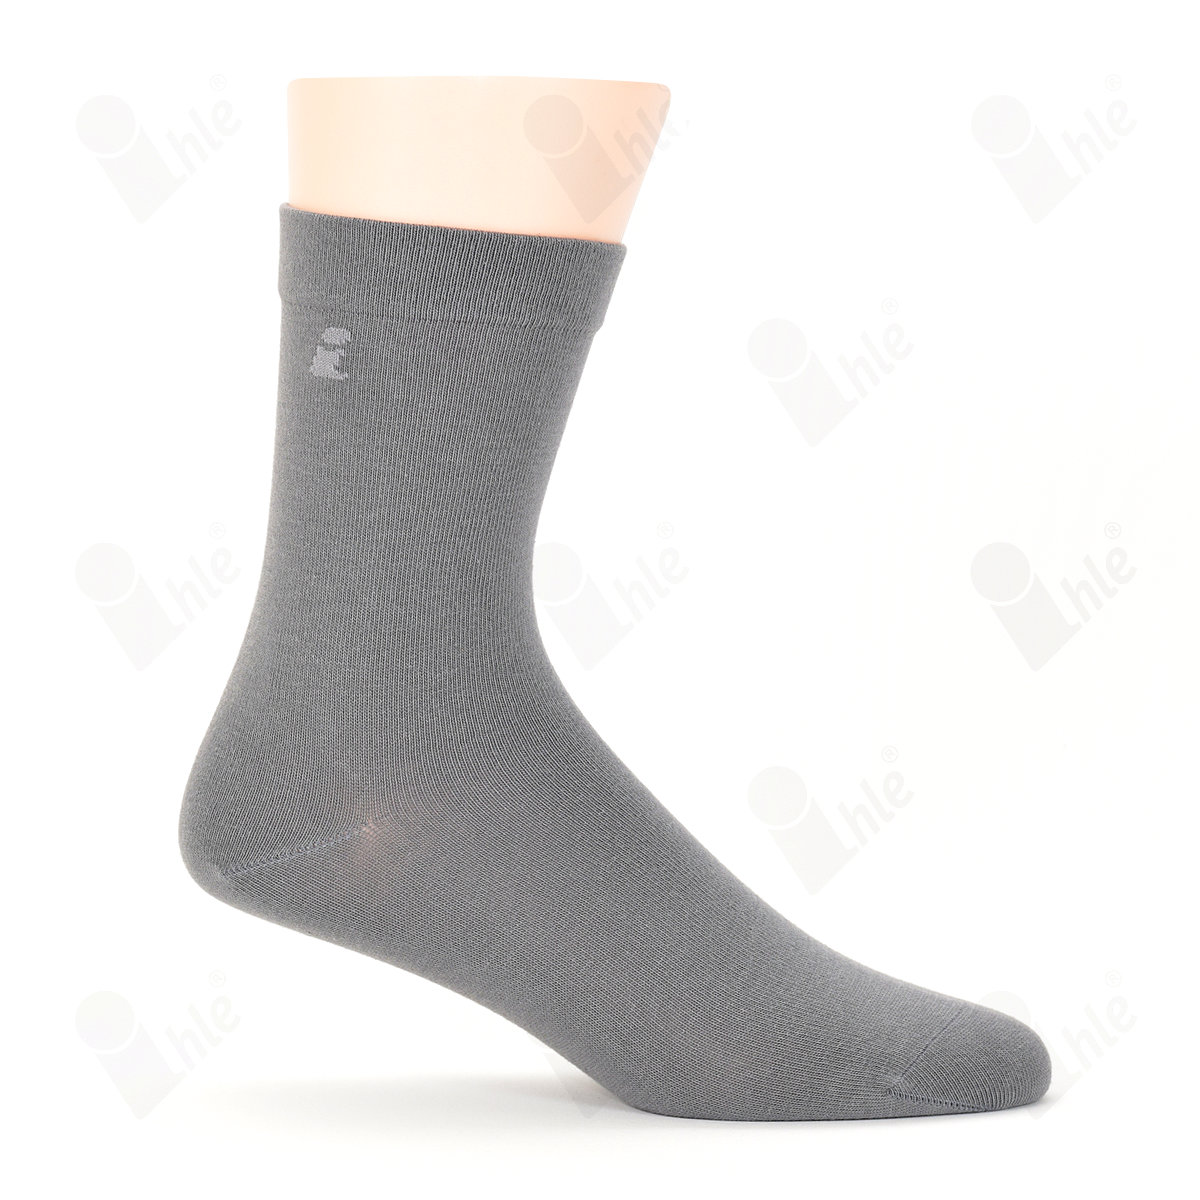 Ihle Socke klassisch grau Gr. 39-42